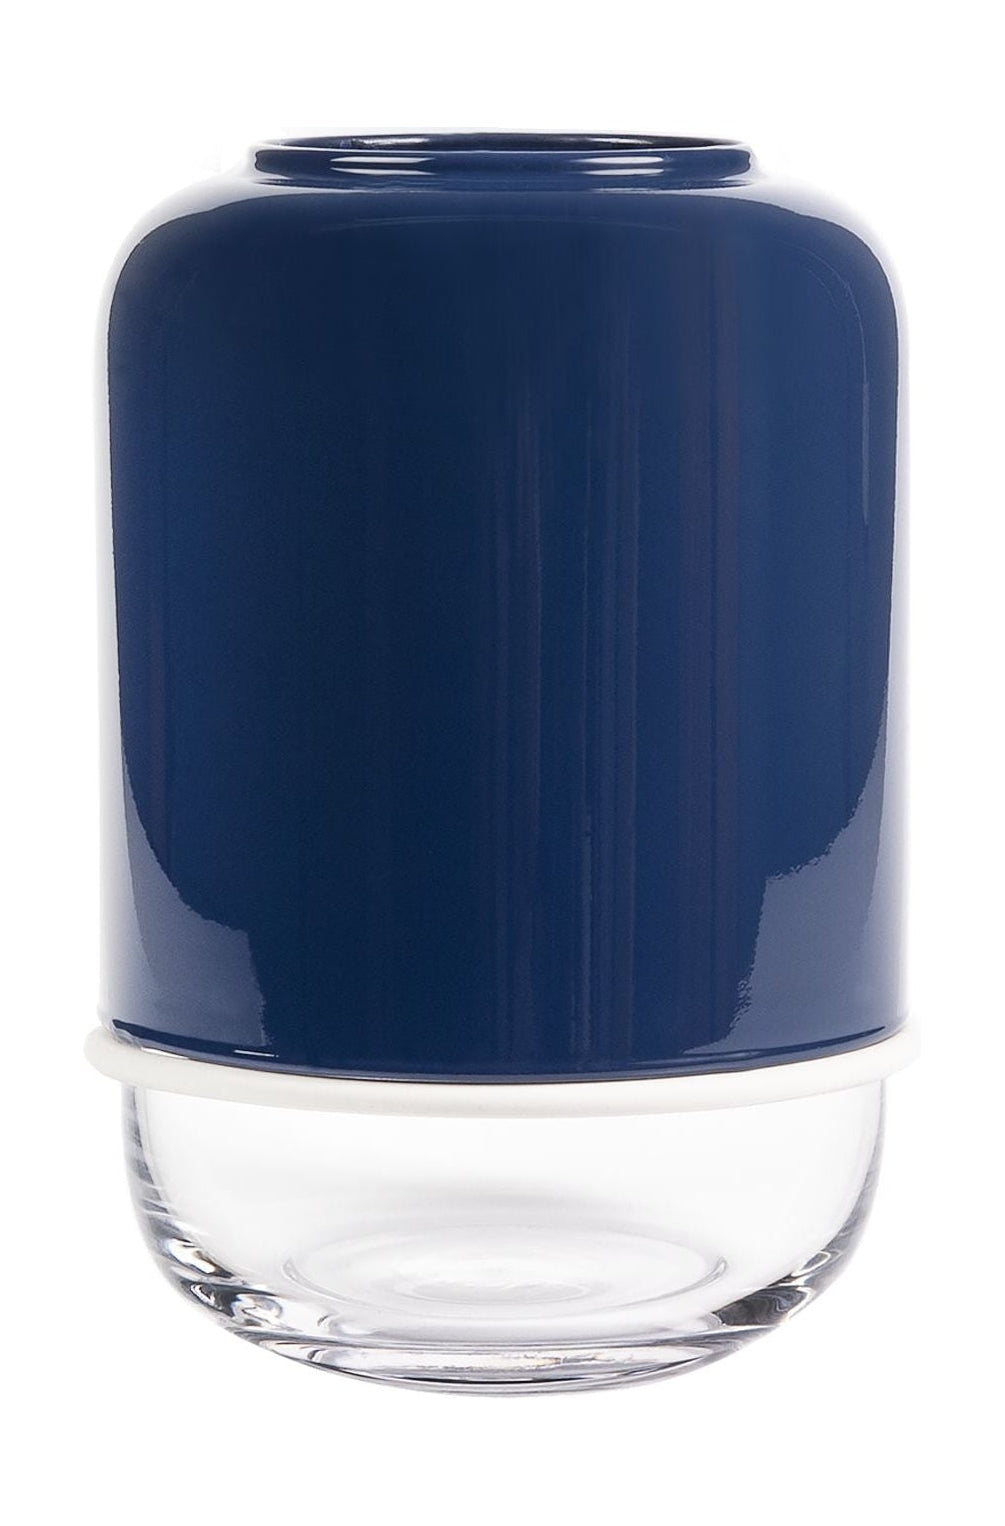 Muurla Capsule Vase, Navy Blue